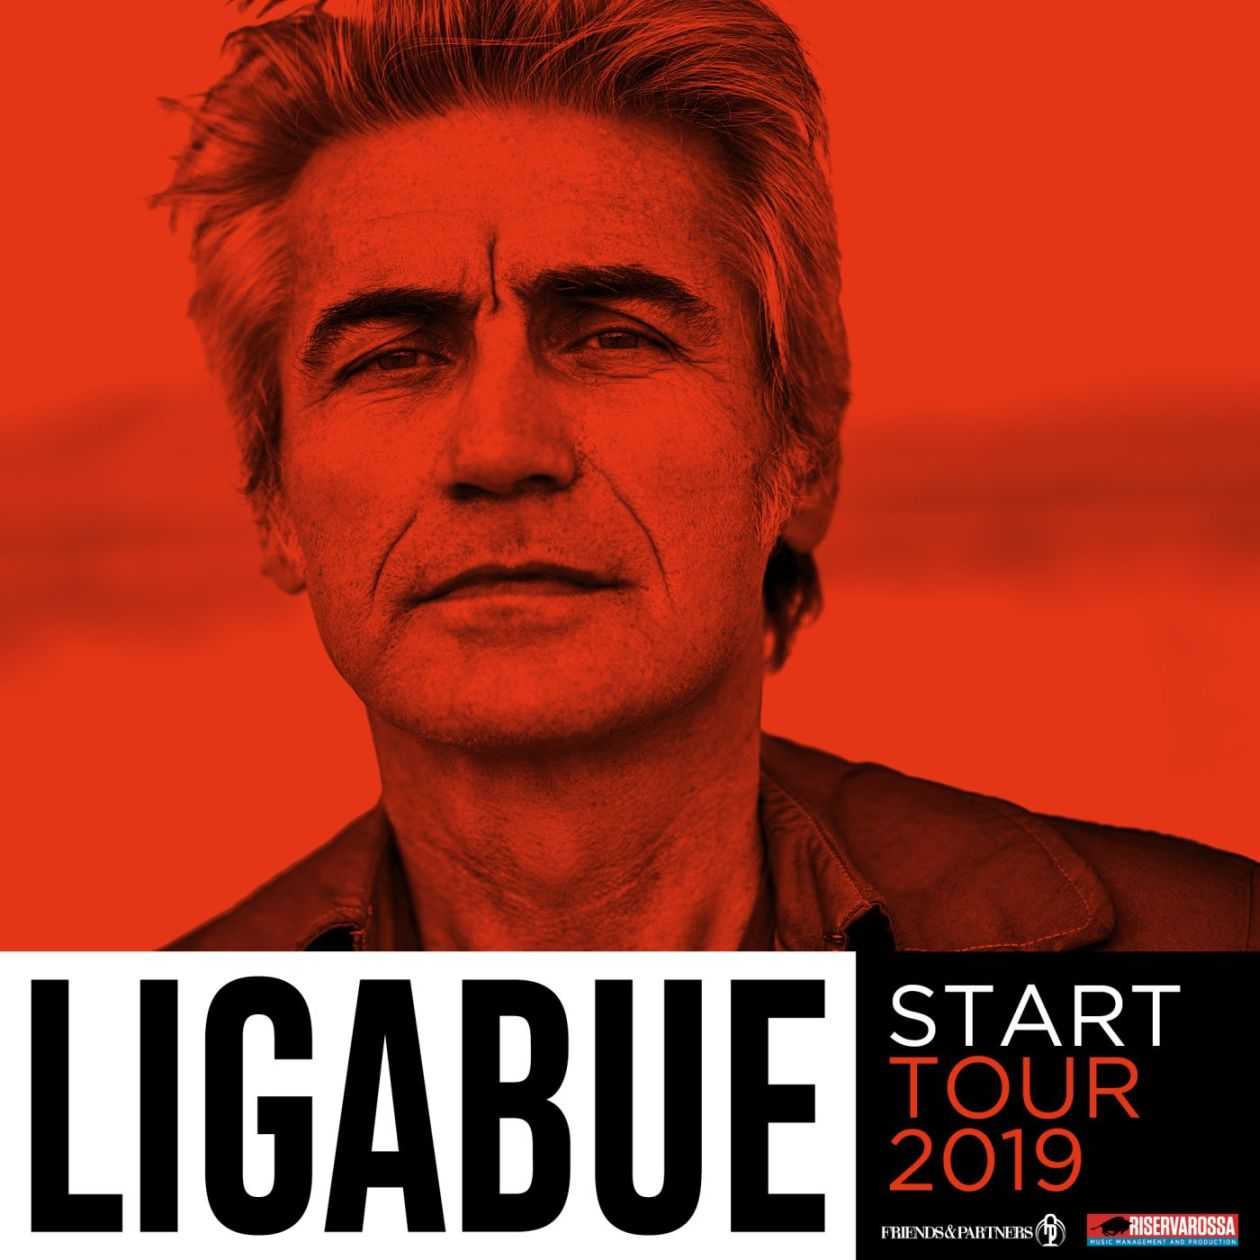 Ligabue "Star tour 2019" "Polvere di stelle" ecco tutte le tappe di Liga